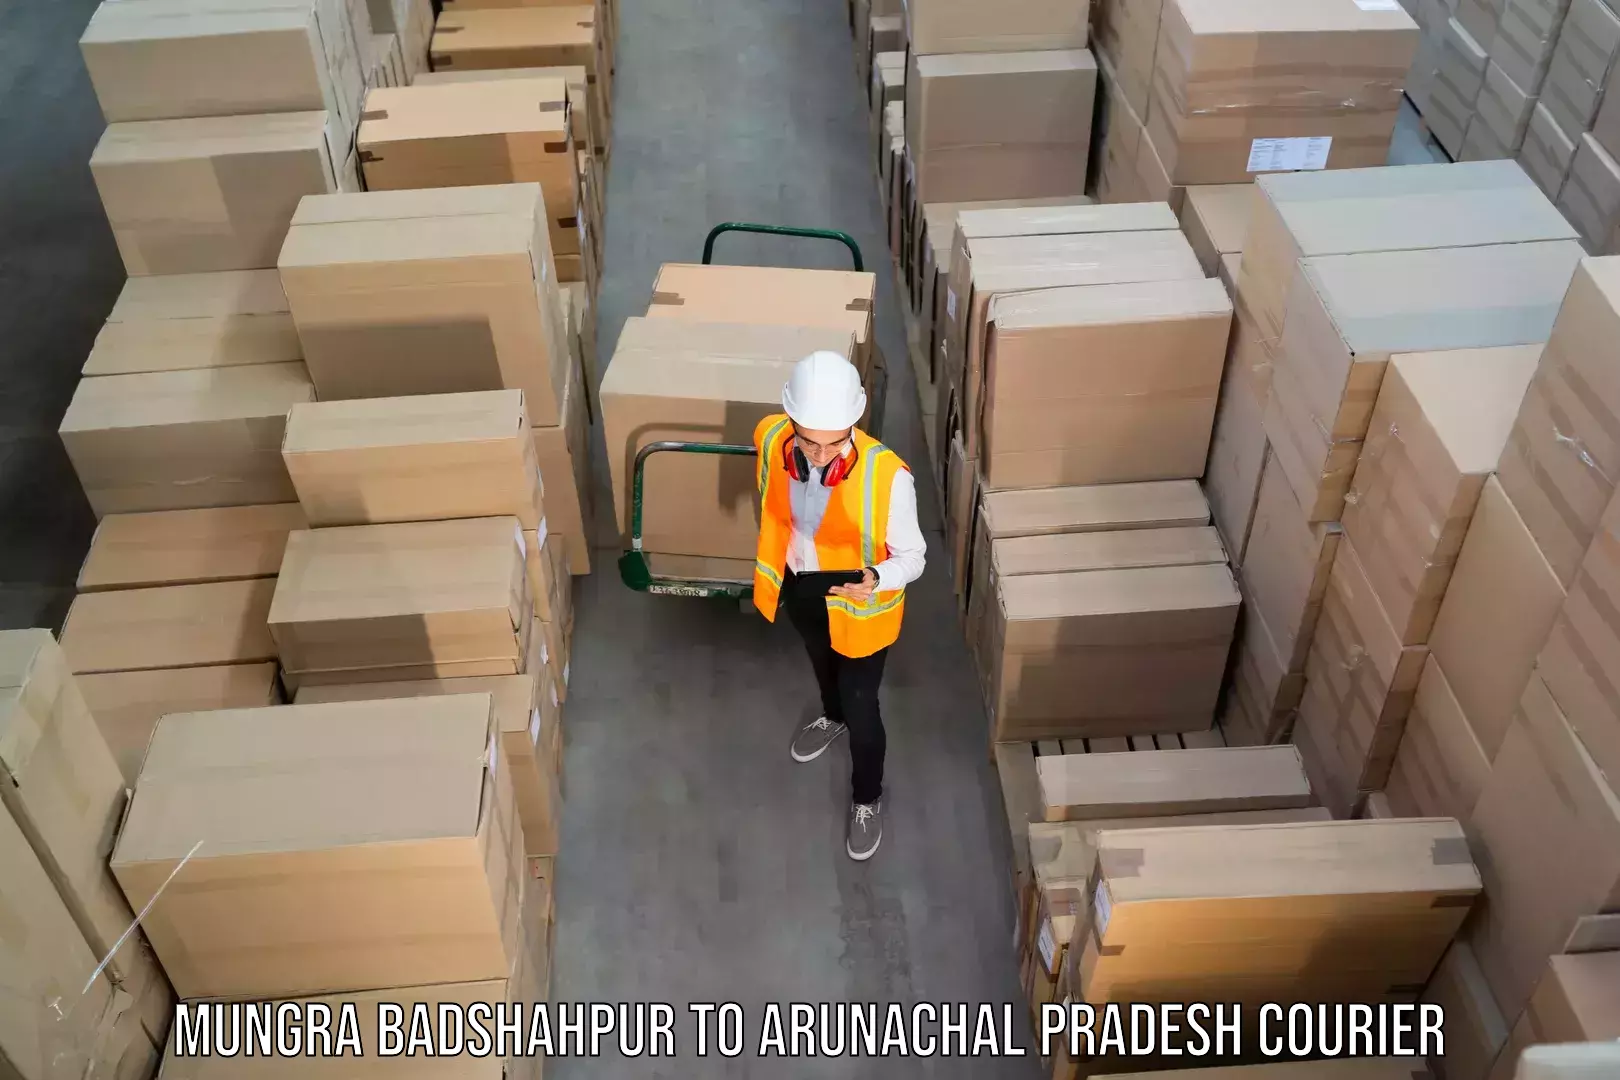 Business shipping needs in Mungra Badshahpur to Arunachal Pradesh